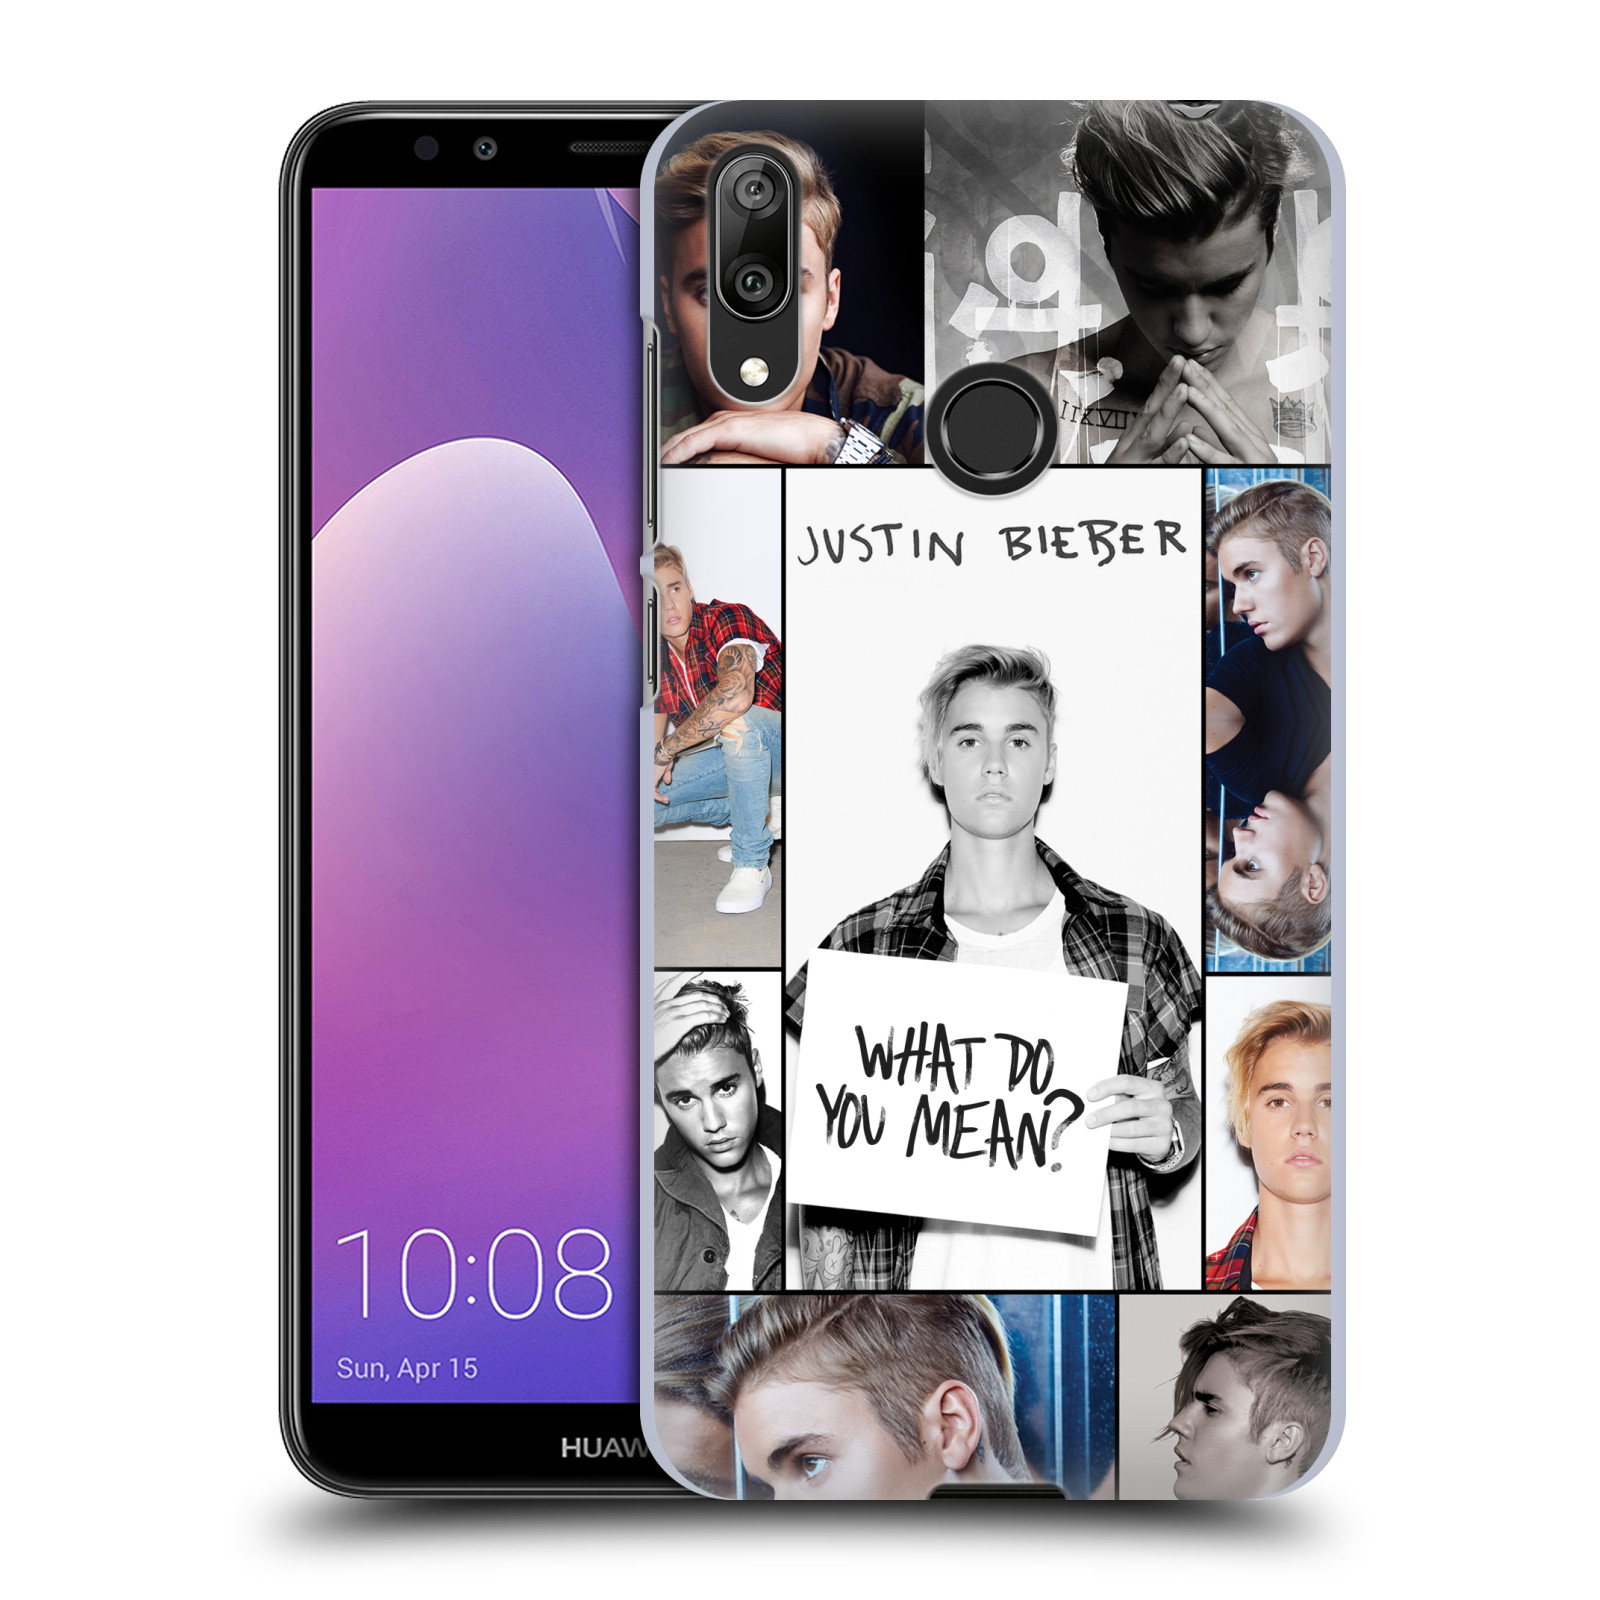 Pouzdro na mobil Huawei Y7 2019 - Head Case - Justin Bieber foto Purpose malé fotky